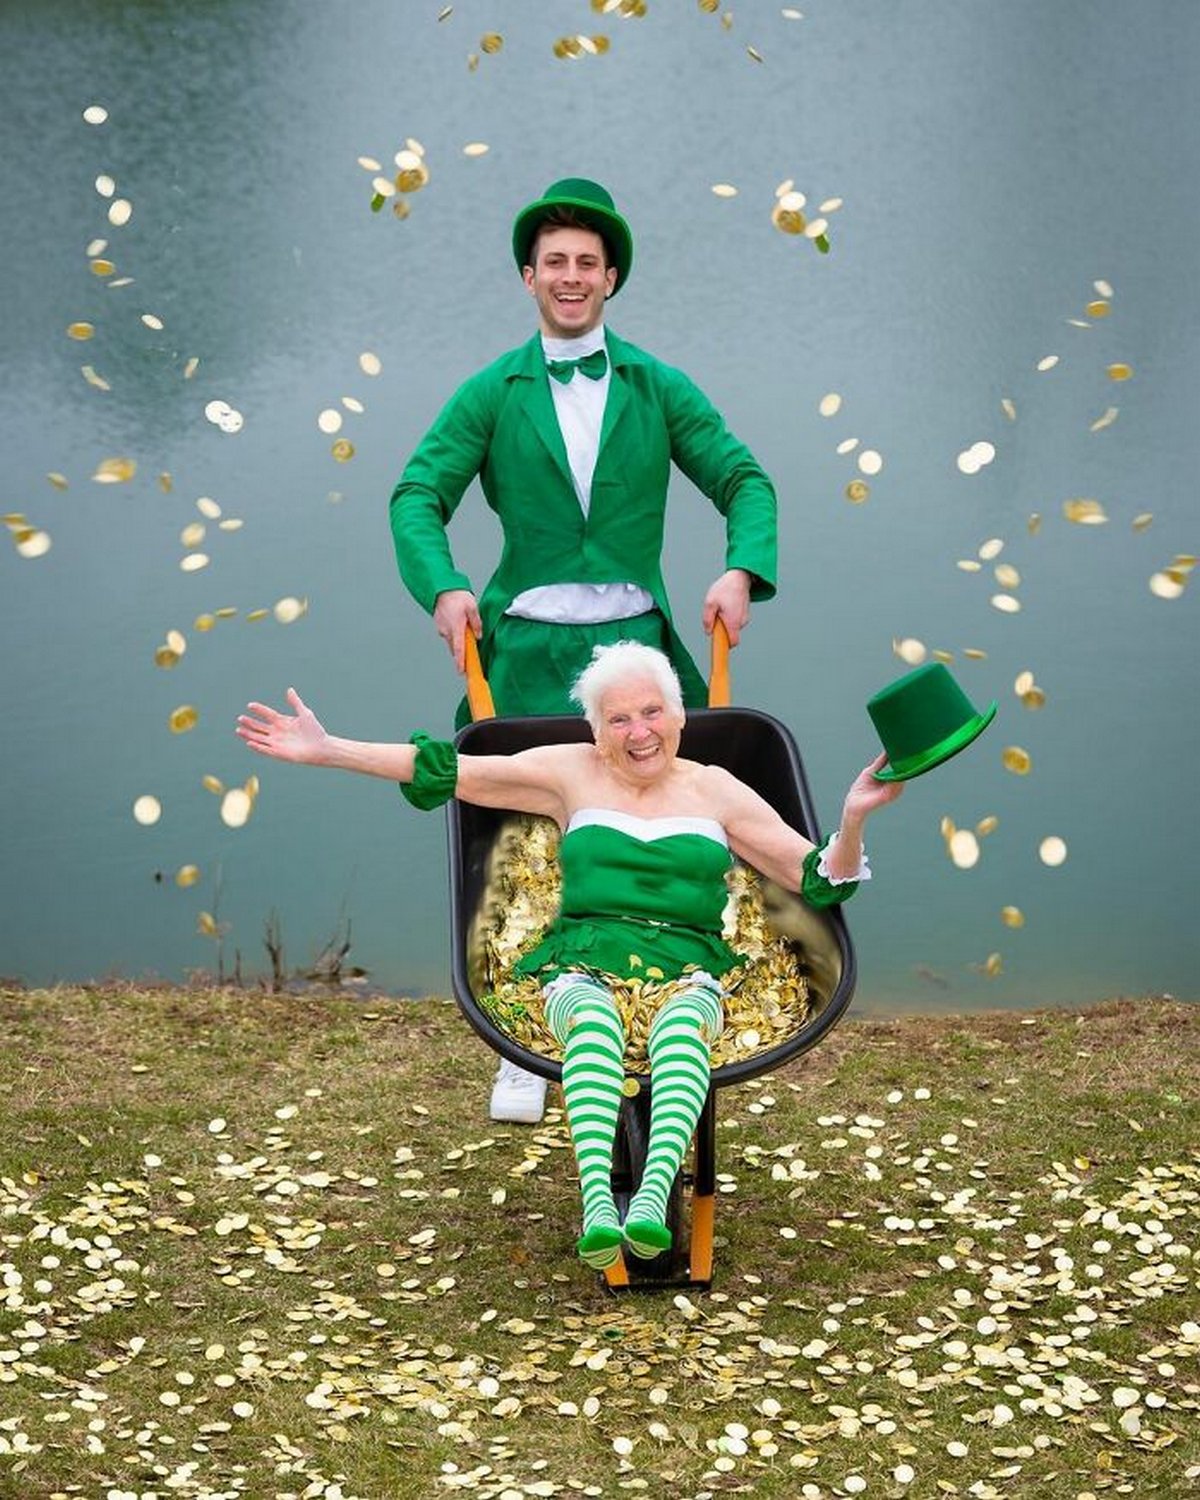 Cette grand-mère de 95 ans et son petit-fils prouvent que le plaisir n’a pas d’âge grâce à leurs costumes hilarants